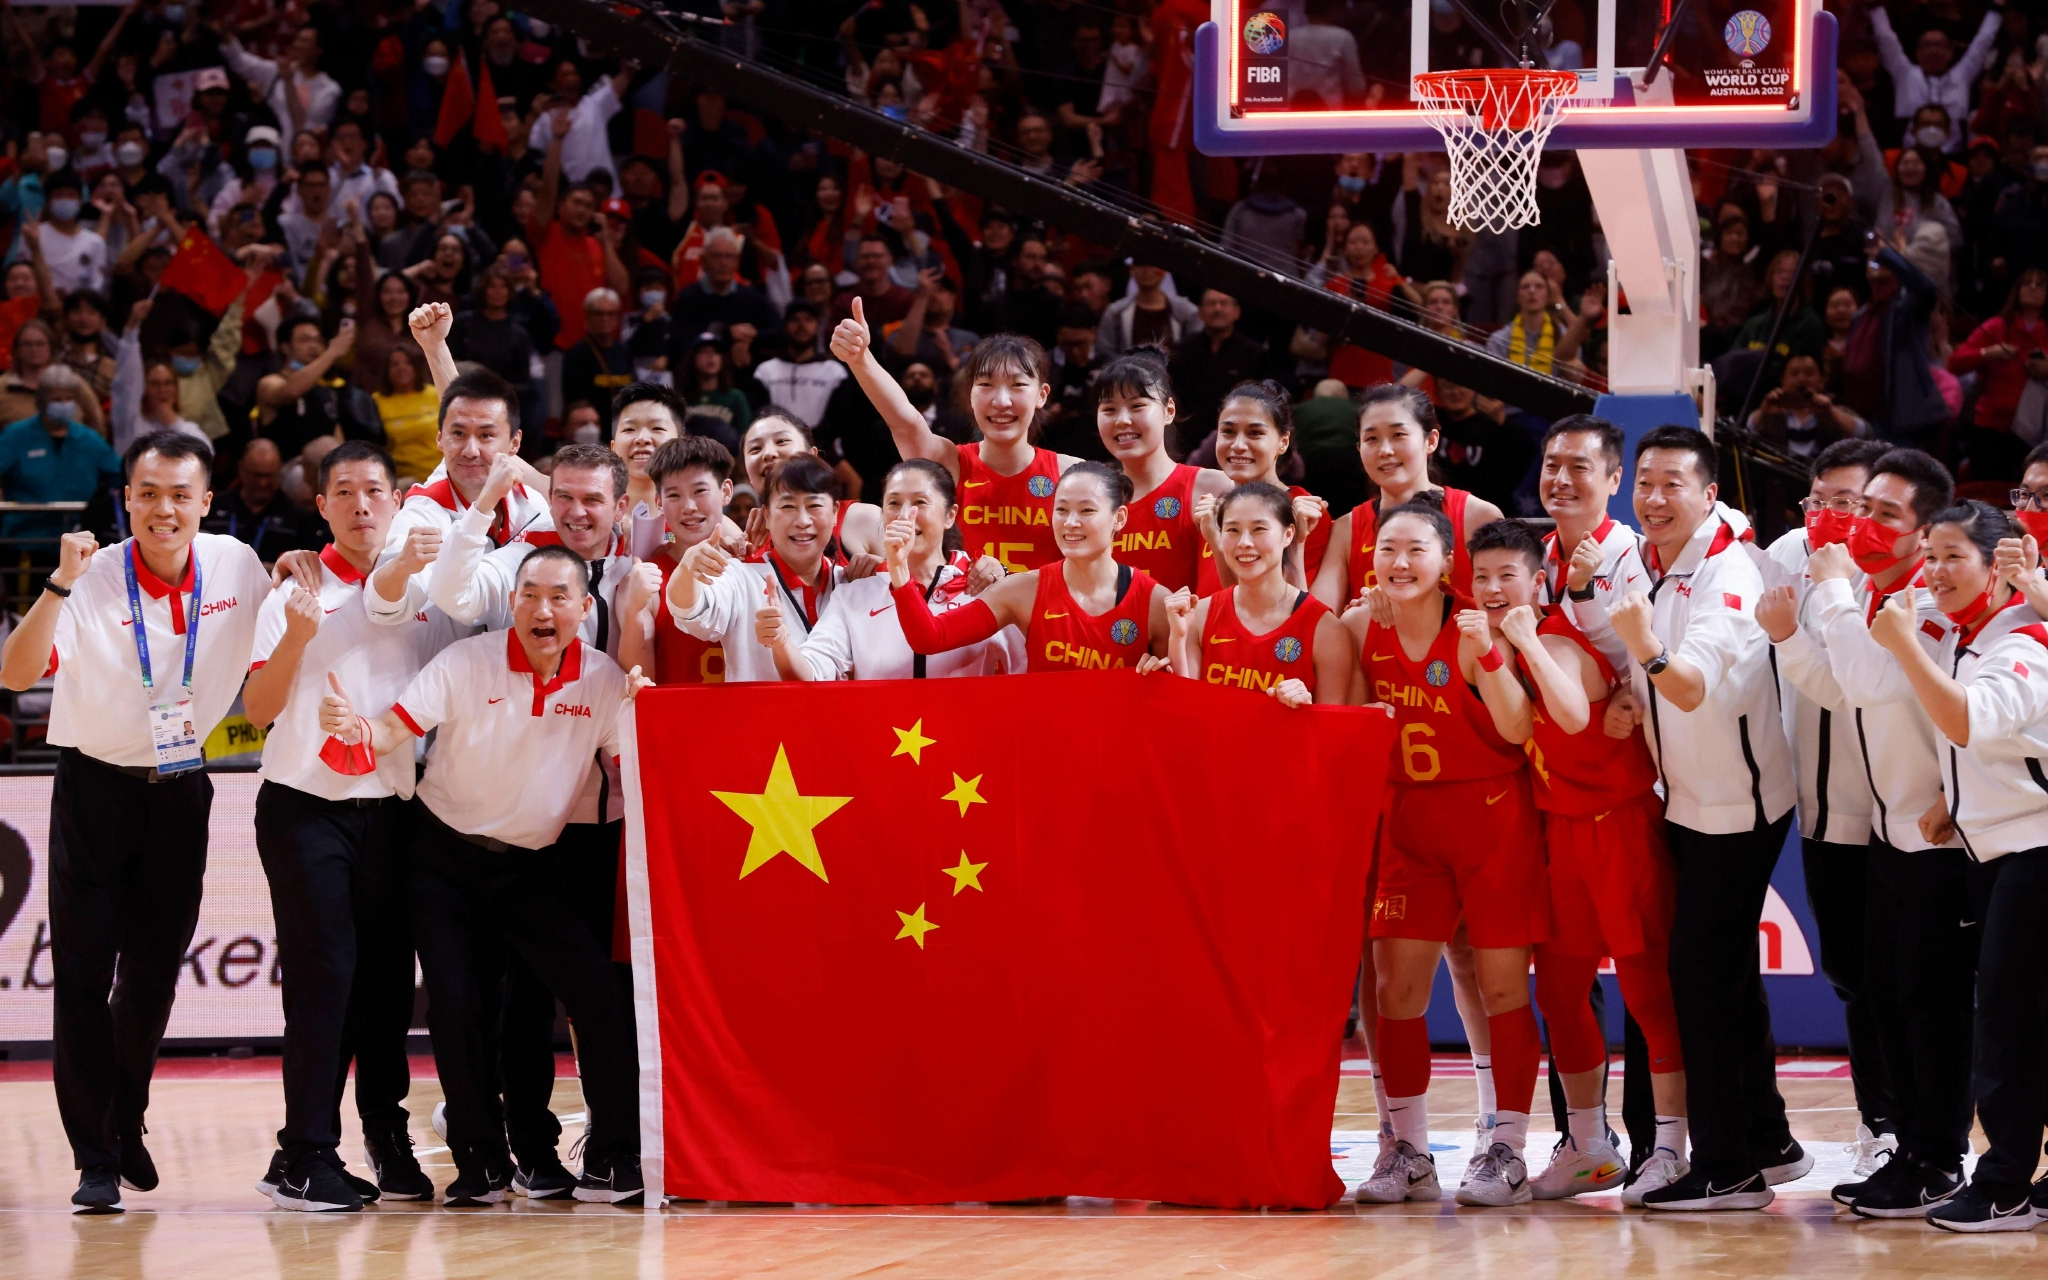 姚明现身女篮世界杯现场 观看中国队比赛-直播吧